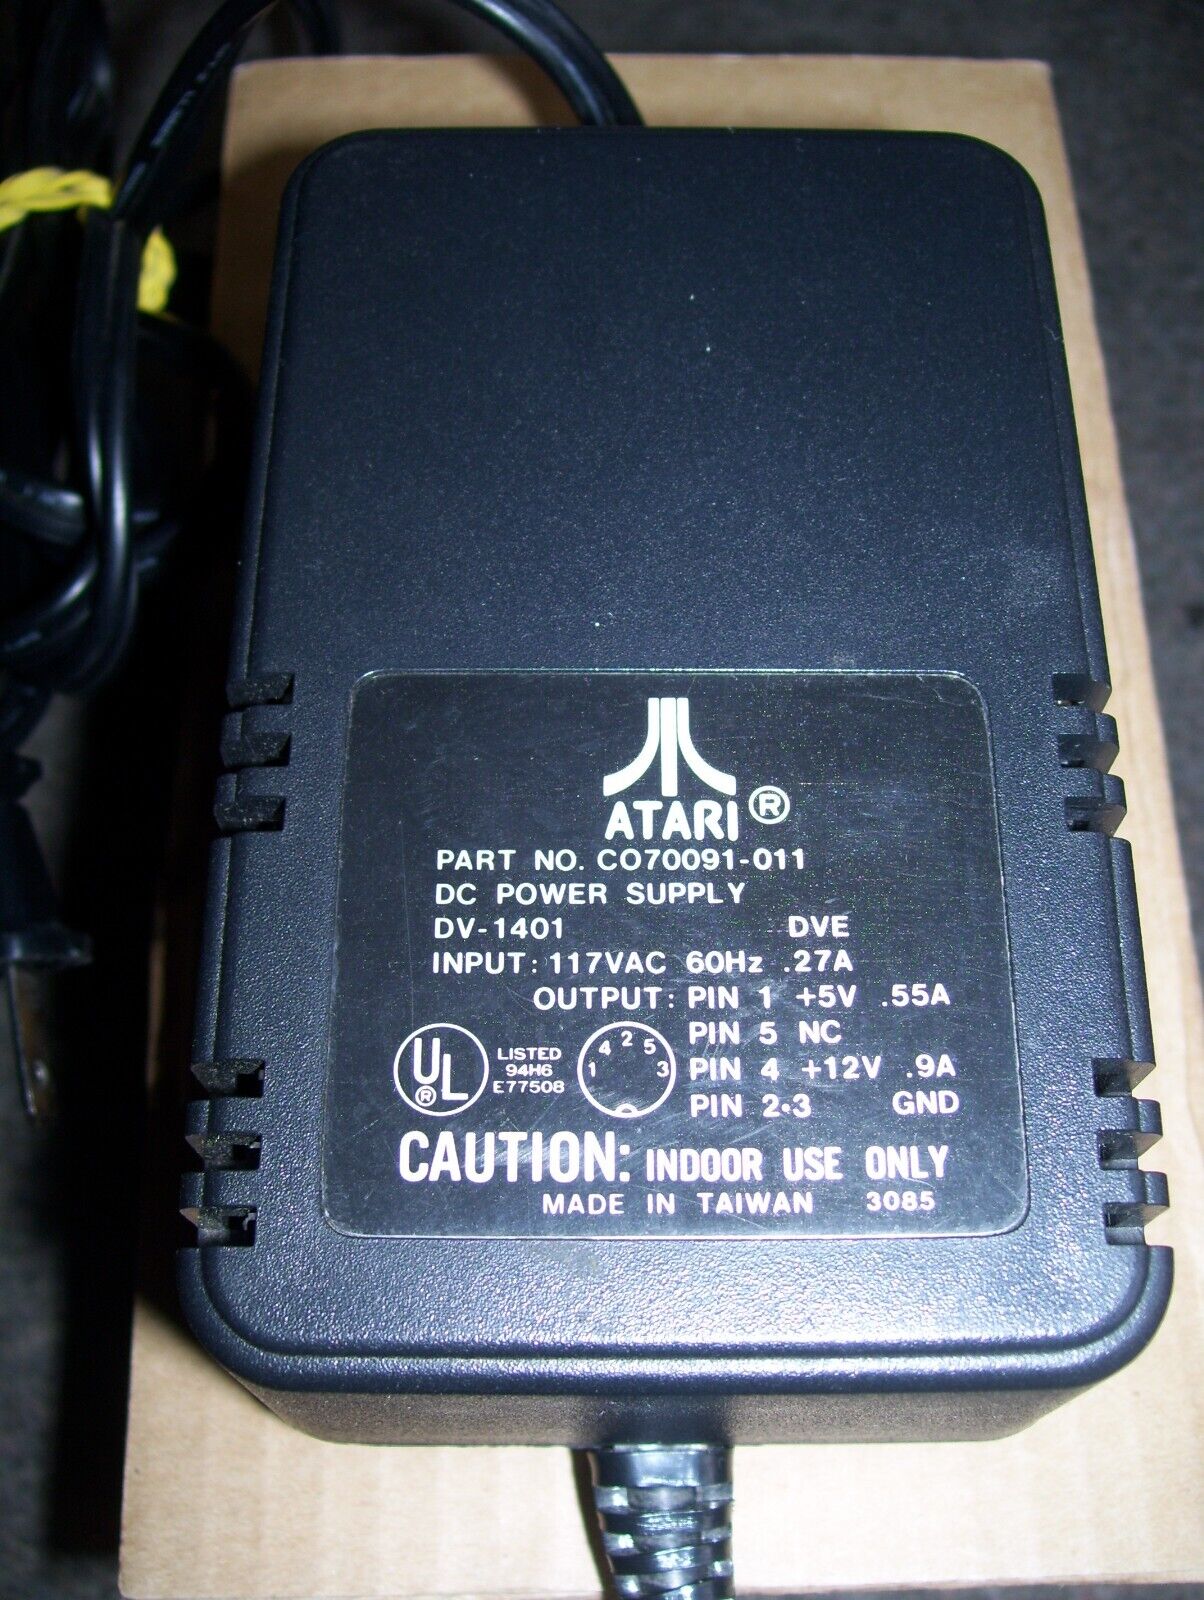 Genuine Atari SF 314 External Floppy Disk Drive USA 117V Power Supply TESTED OK